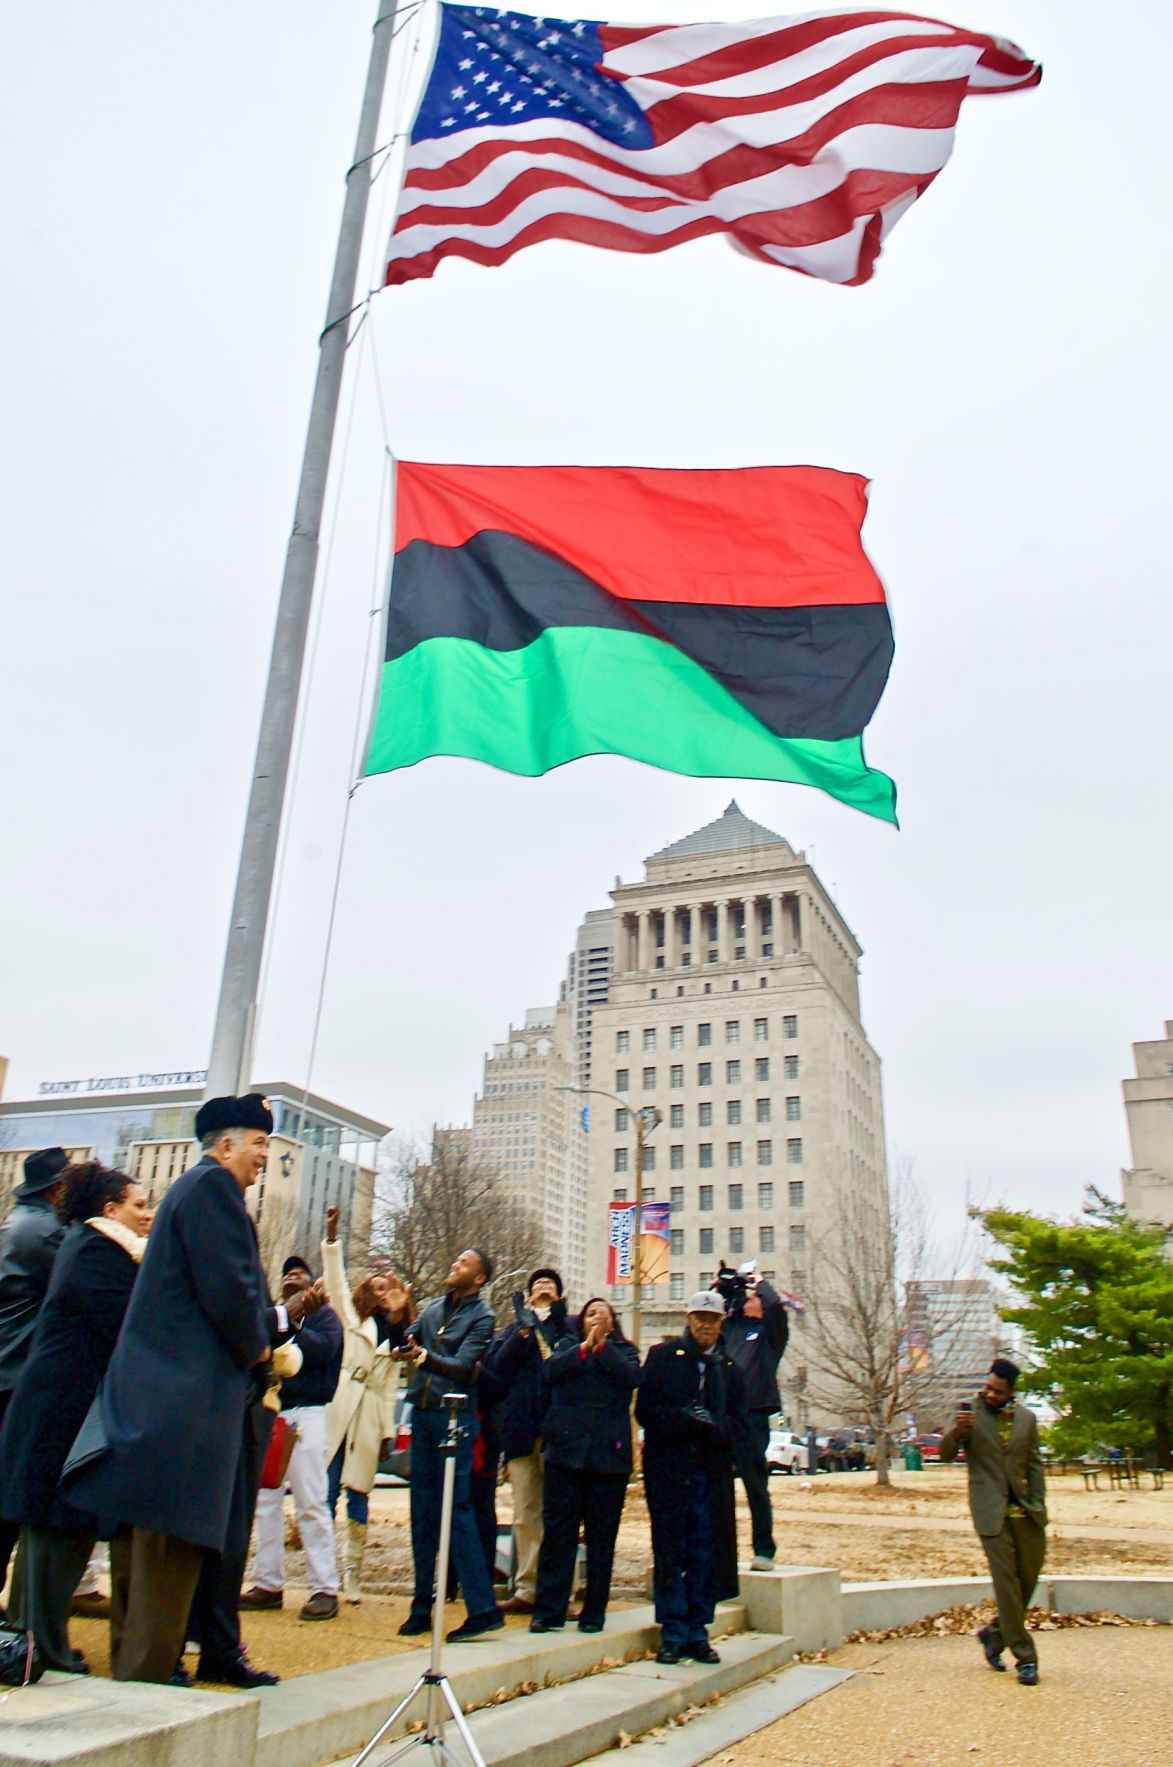 St. Louis city alderman receives threatening letter from KKK over flag honoring Black History ...